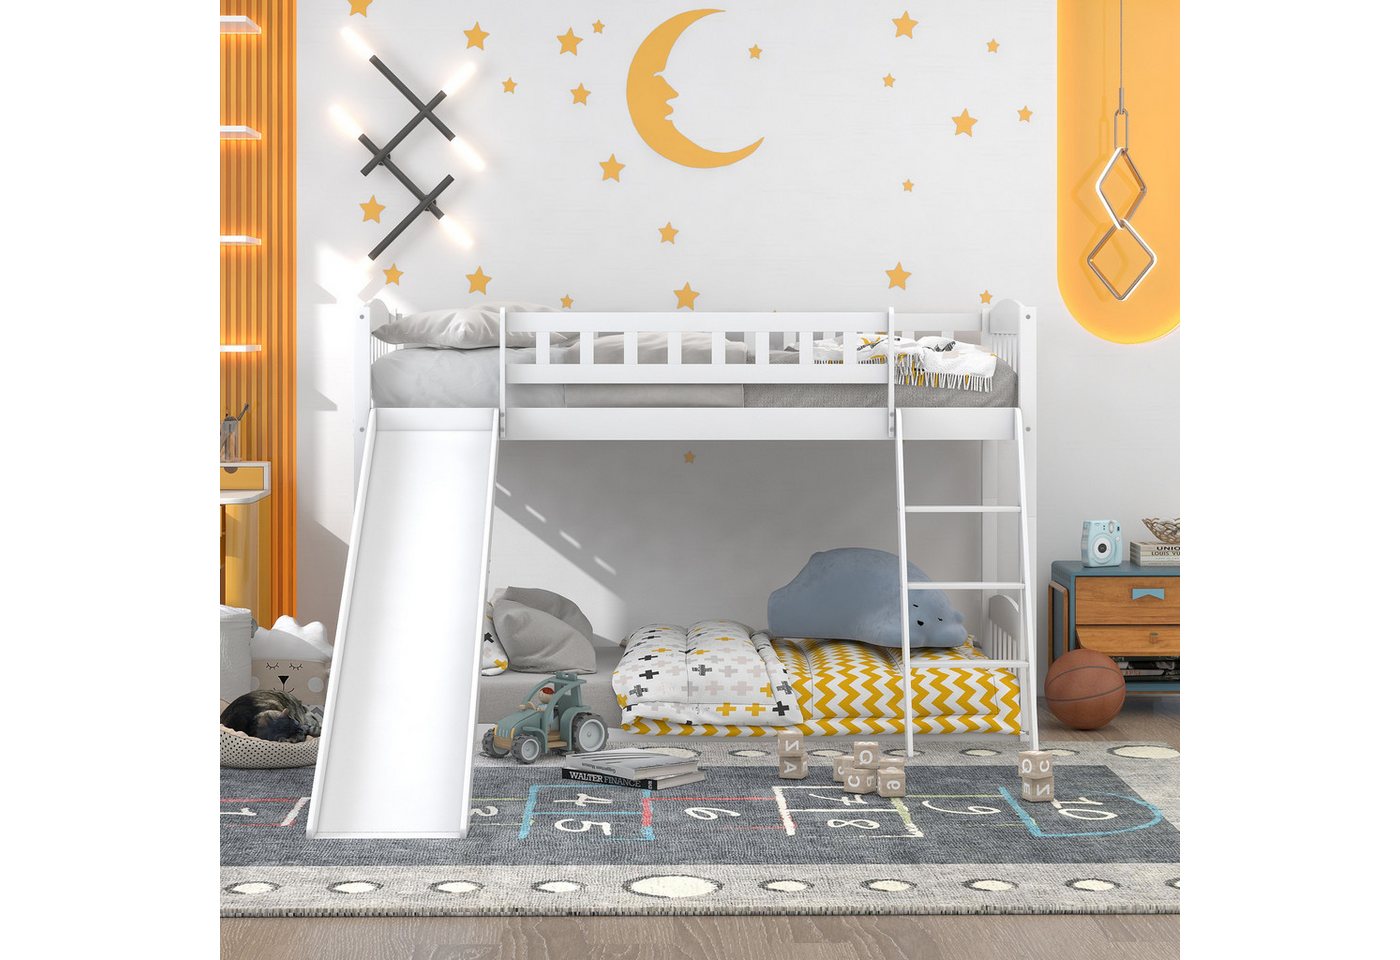 IDEASY Etagenbett Kinderbett mit Rutsche, 90 x 200 cm, weiß, (umwandelbar in zwei separate Plattformbetten, einfacher Aufbau), für Erwachsene und Kinder geeignet von IDEASY